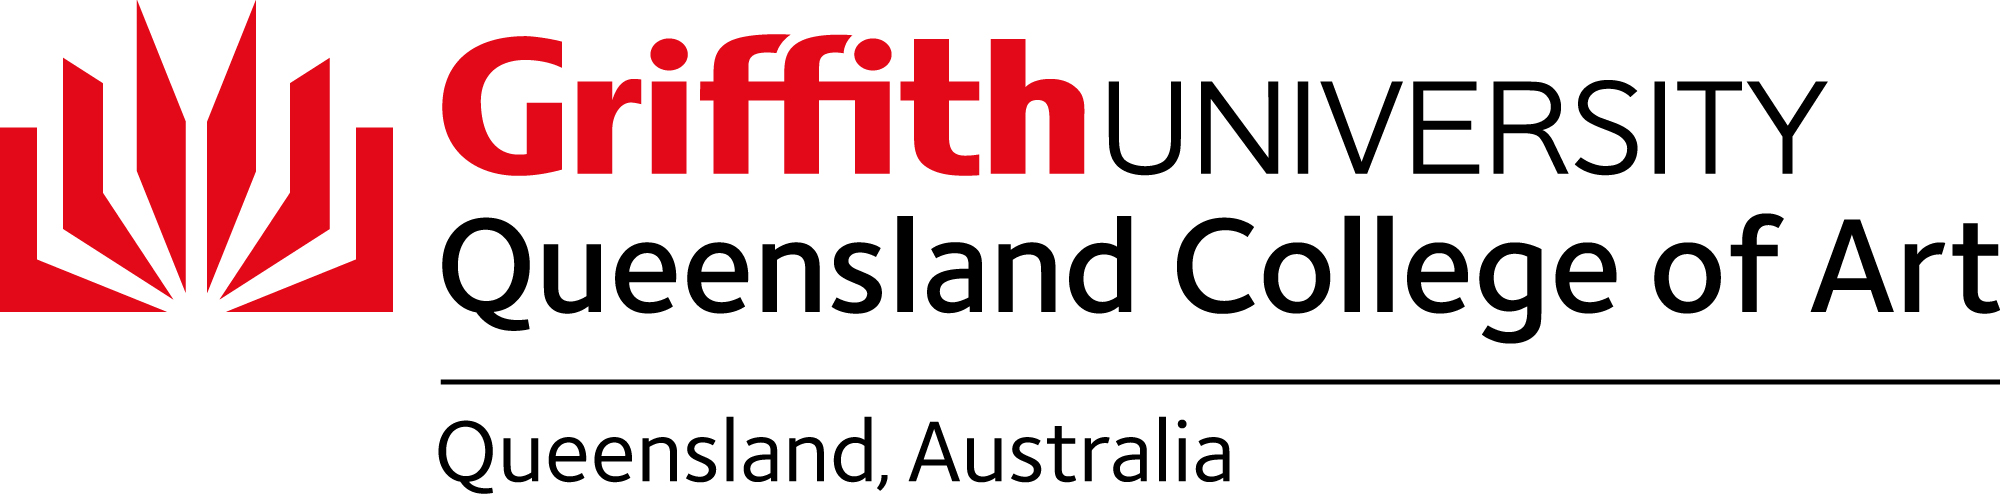 Queensland College of Art logo